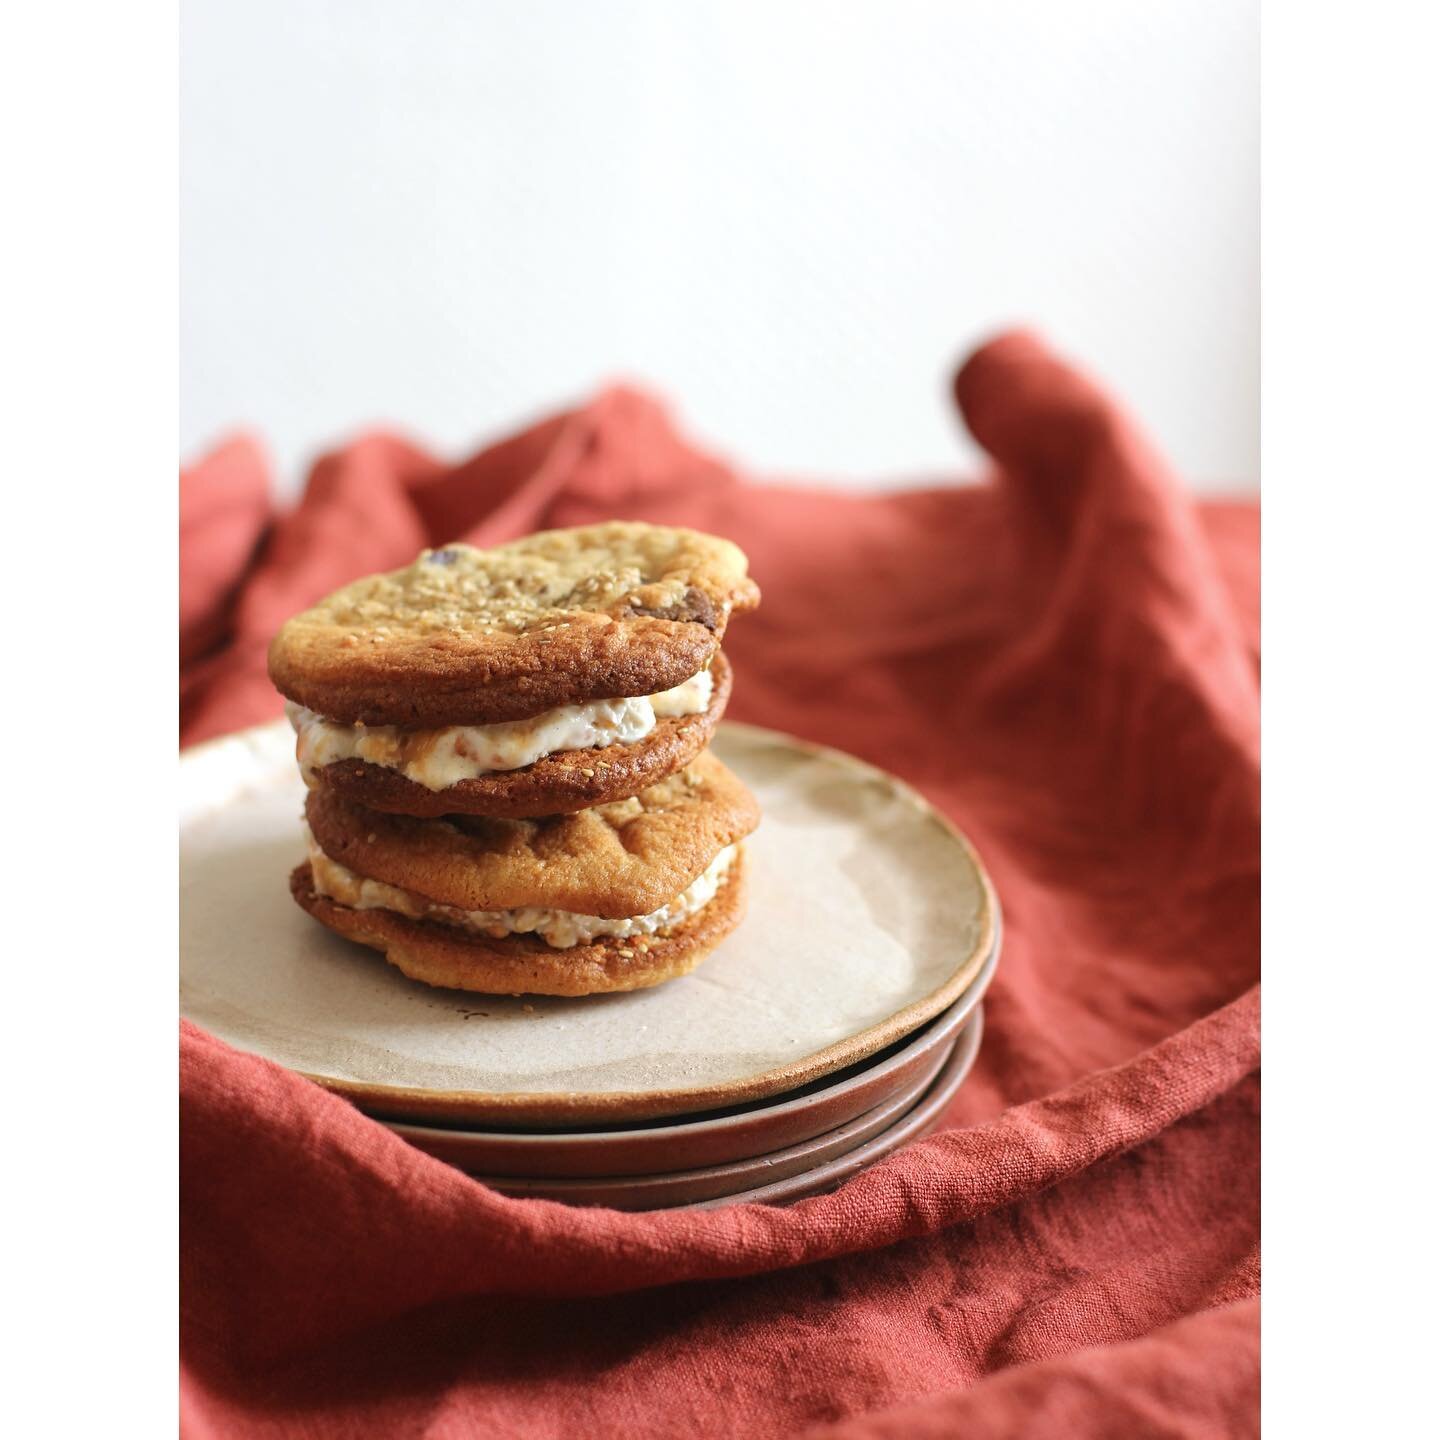 Les cookies autrement ✨ souvenir d&rsquo;un divin ice cream sandwich avec notre #gourmandesclub 🍪 Recettes tir&eacute;es de @lecookiedenosreves / et glace vanille 👌🏻